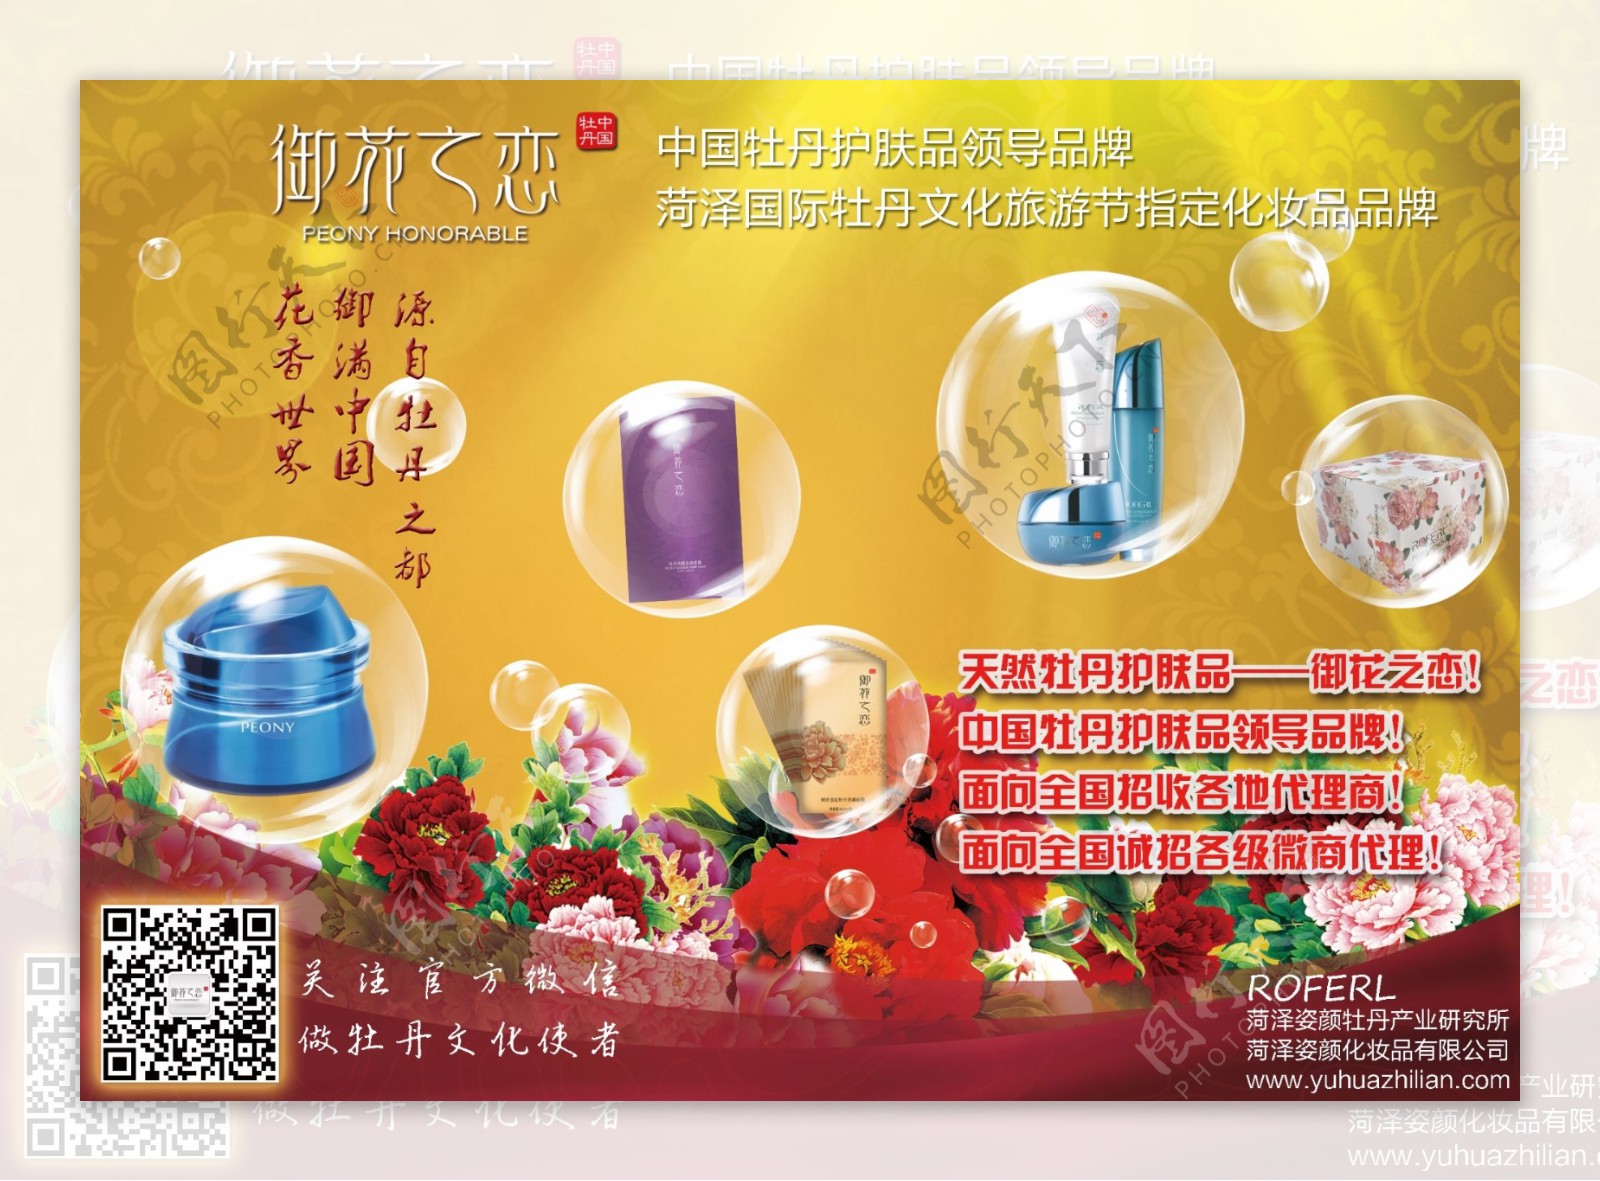 菏泽国际牡丹文化旅游节唯一指定化妆品品牌